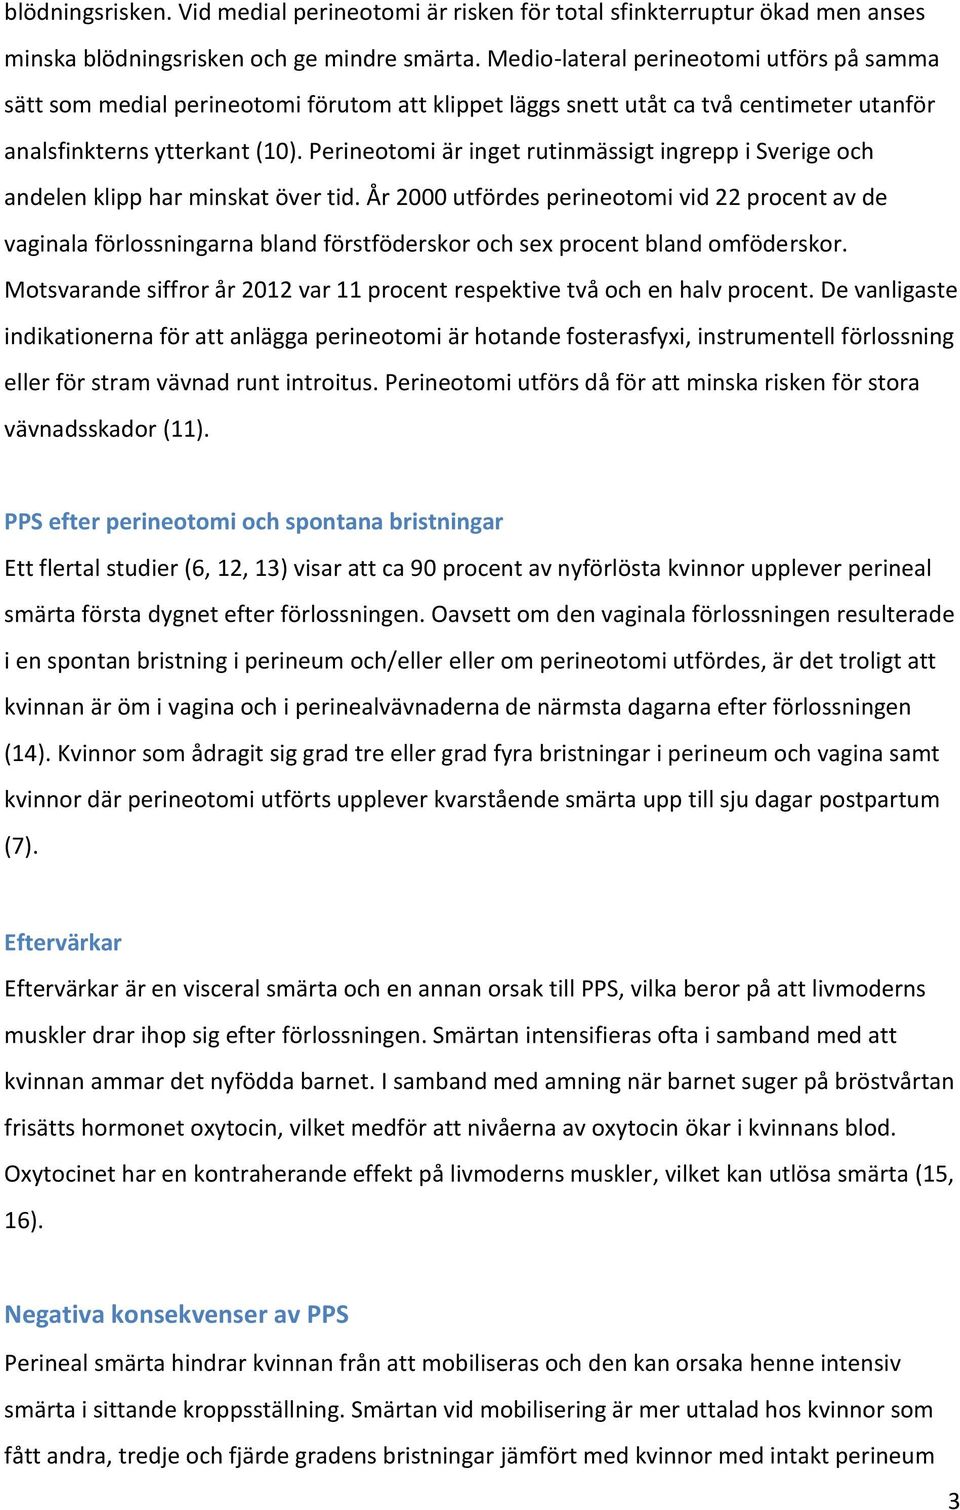 Perineotomi är inget rutinmässigt ingrepp i Sverige och andelen klipp har minskat över tid.